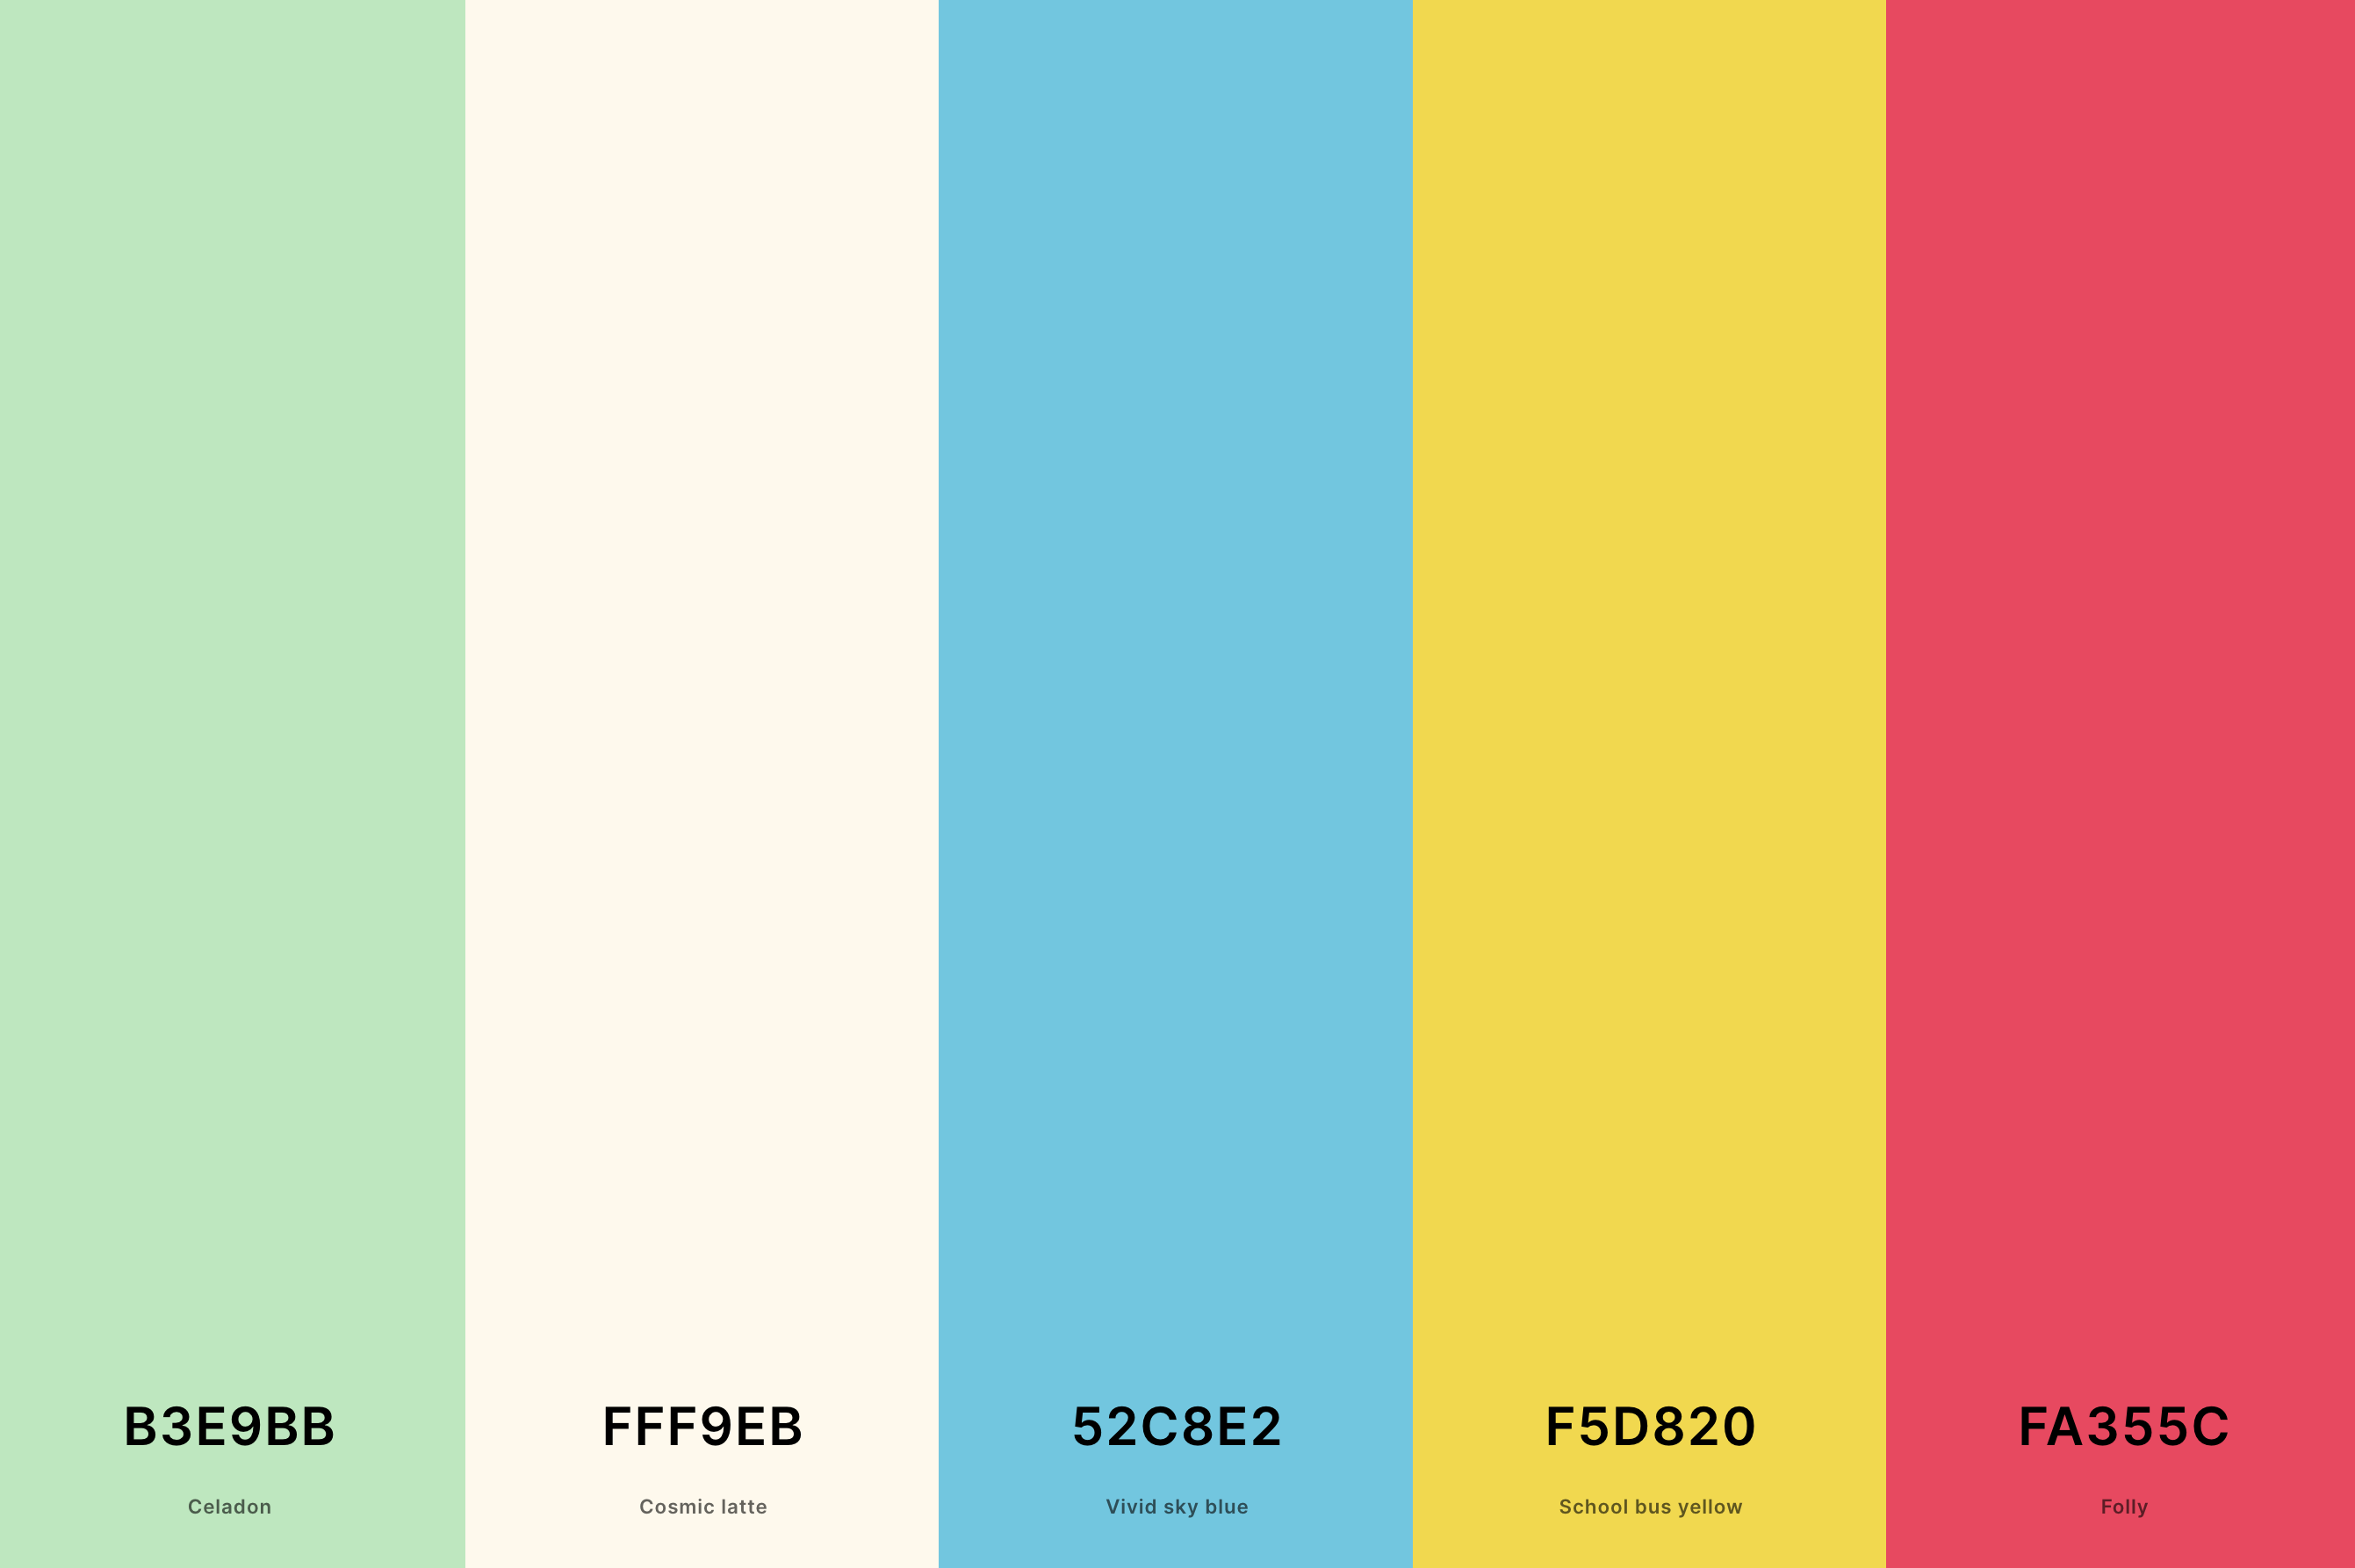 6. Summer Retro Color Palette Color Palette with Celadon (Hex #B3E9BB) + Cosmic Latte (Hex #FFF9EB) + Vivid Sky Blue (Hex #52C8E2) + School Bus Yellow (Hex #F5D820) + Folly (Hex #FA355C) Color Palette with Hex Codes